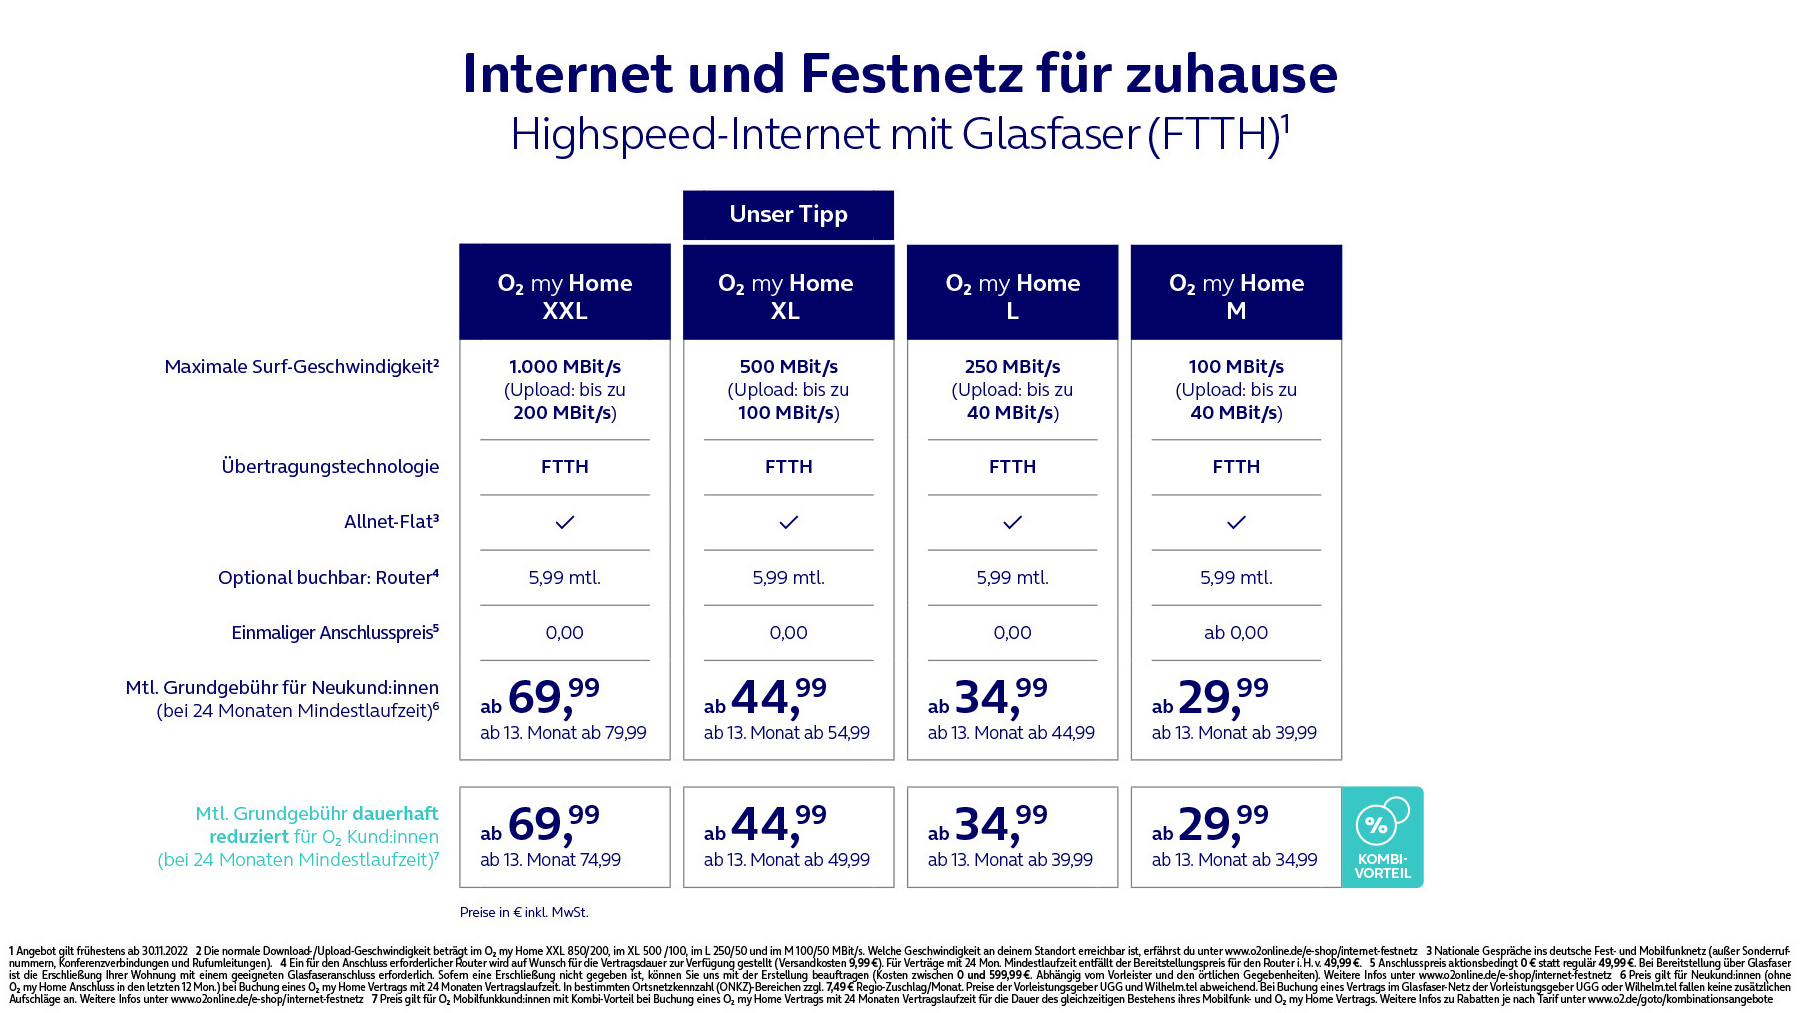 Tariftabelle-11-2022-Glasfaser-Internet-Festnetz-fuer-Zuhause-mit-Fussnote-16zu9.jpg